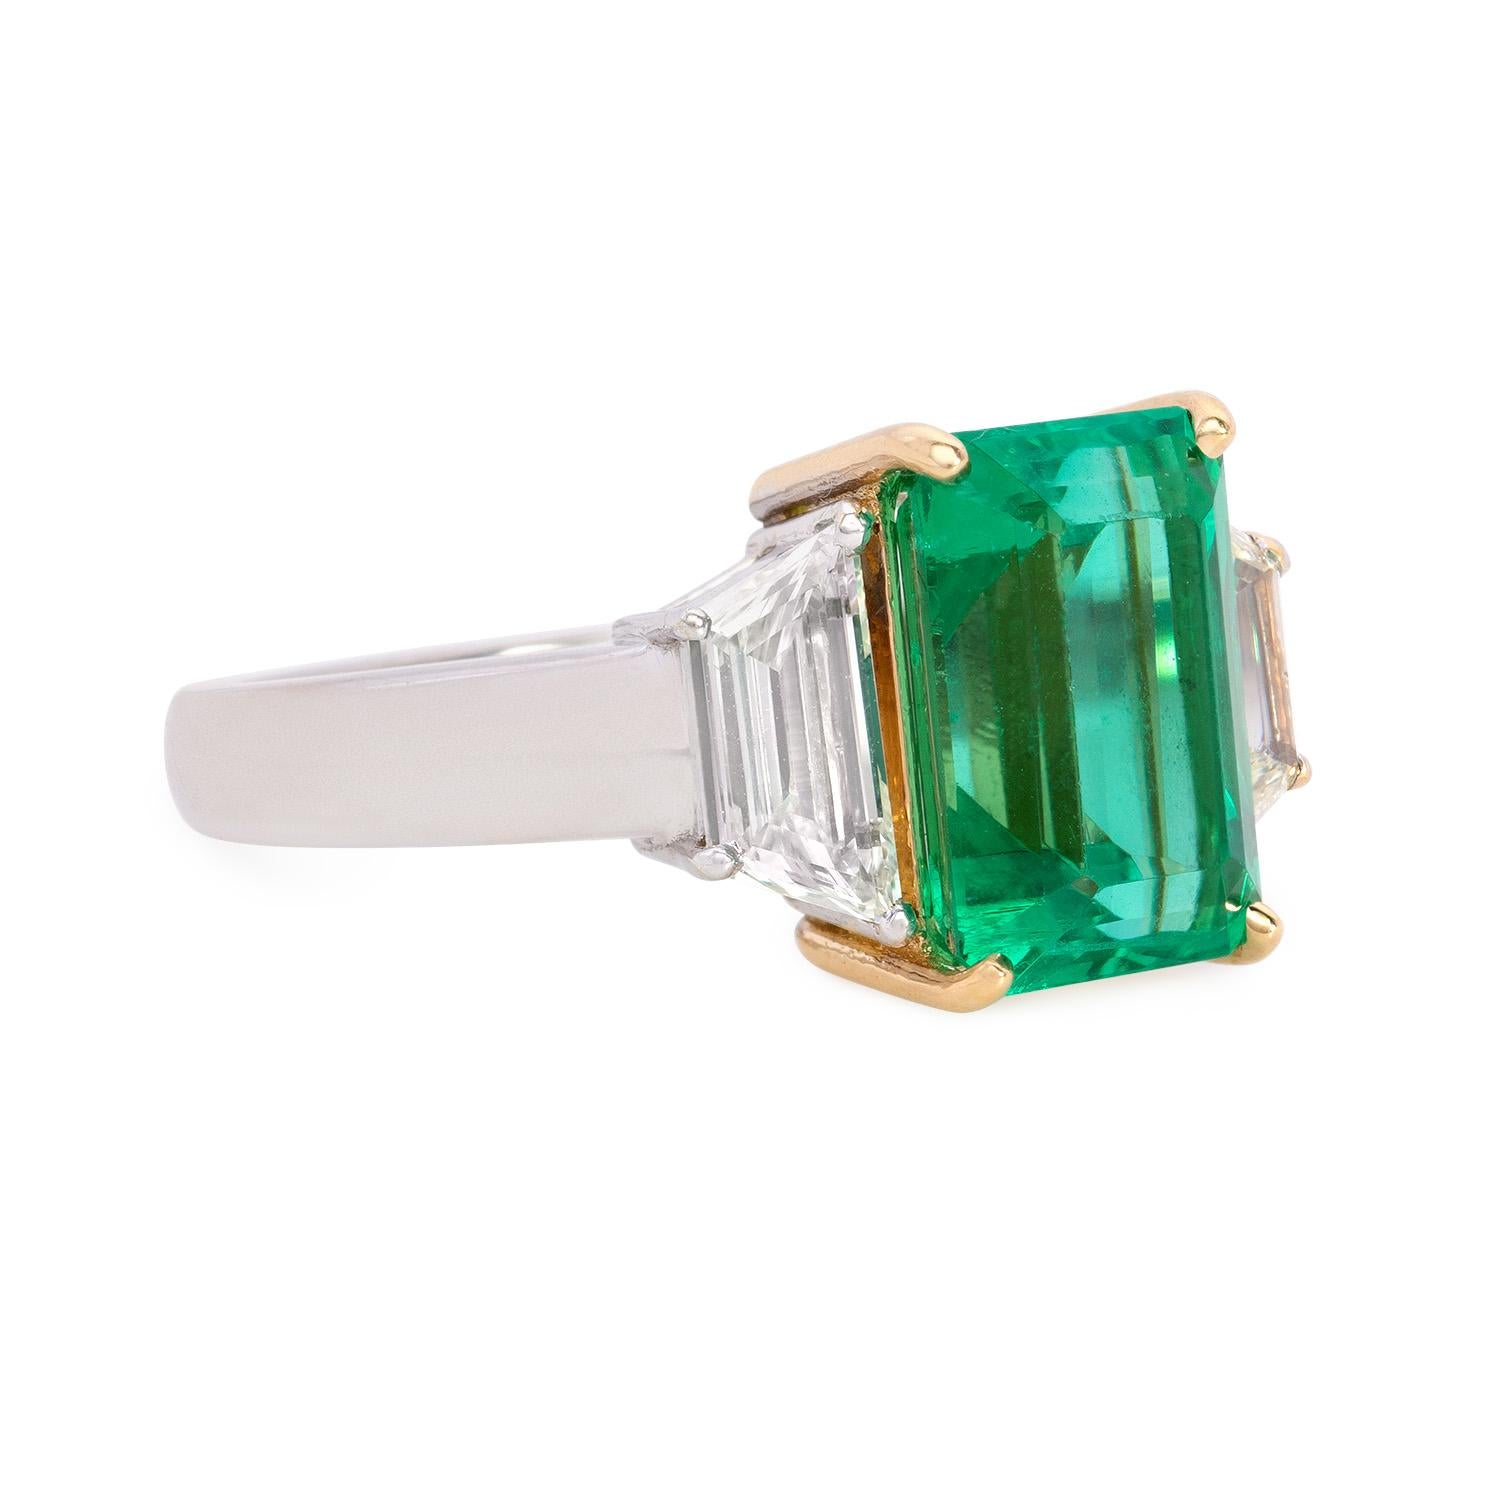 Voici cette bague en émeraude naturelle et diamant, une pièce de joaillerie étonnante et luxueuse. La pièce maîtresse de la bague est une grande émeraude de haute qualité de 3,84 carats, qui présente une couleur verte vibrante captivante, un